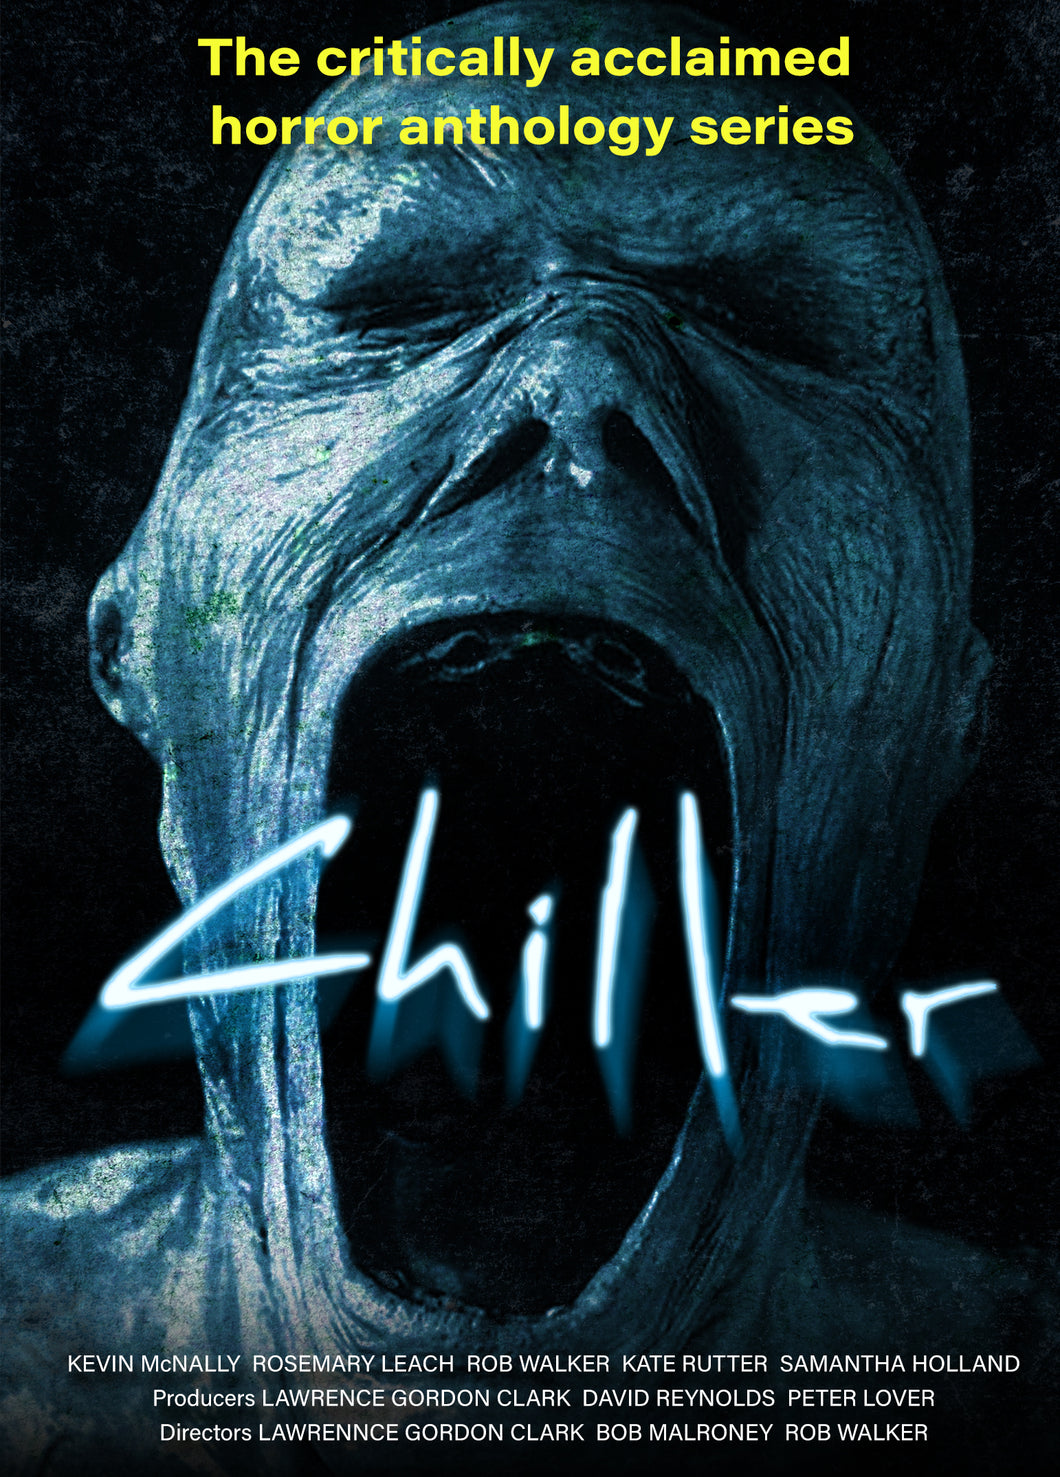 Chiller (DVD)